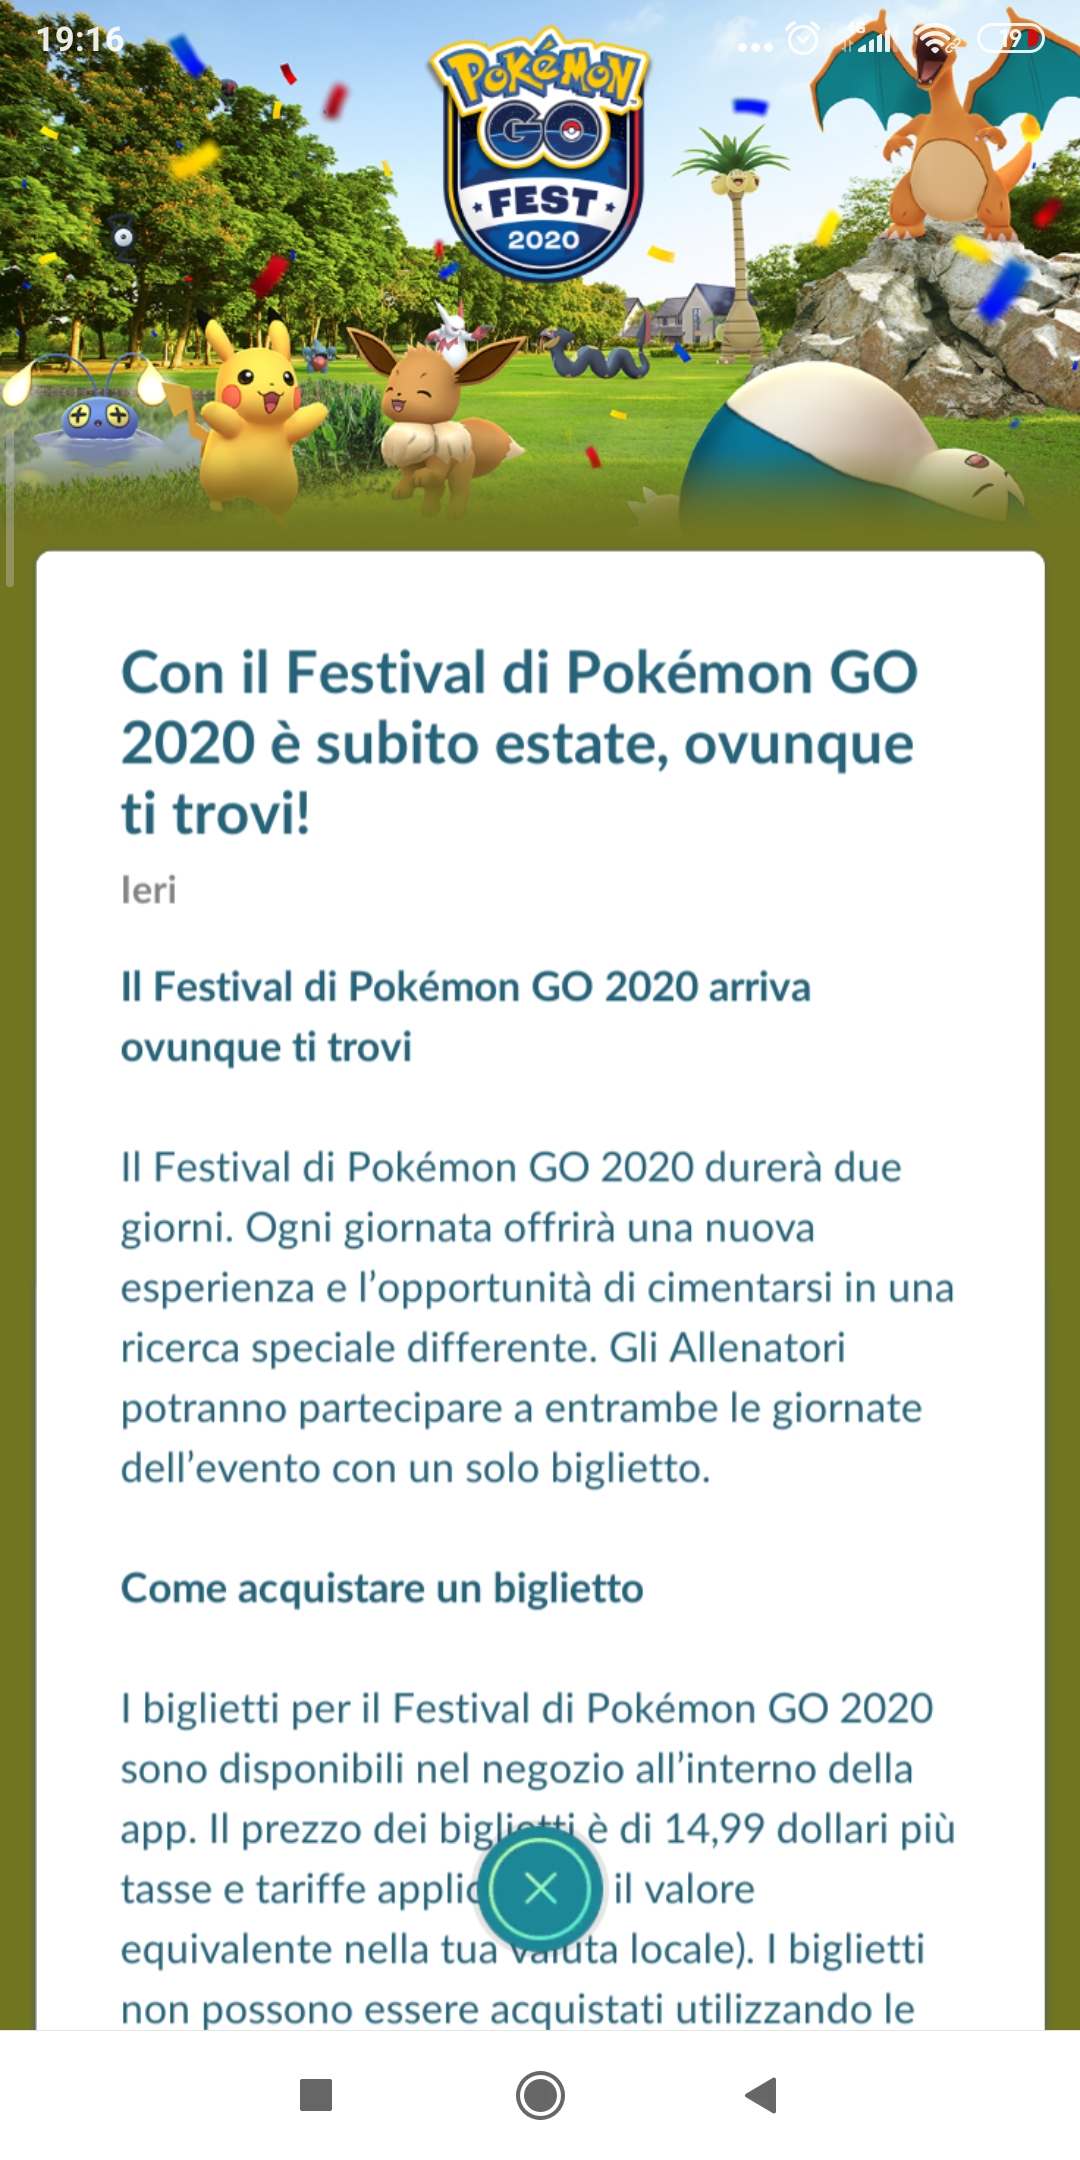 Il Pokémon GO Fest 2020 sta per arrivare: ecco tutti i dettagli 1